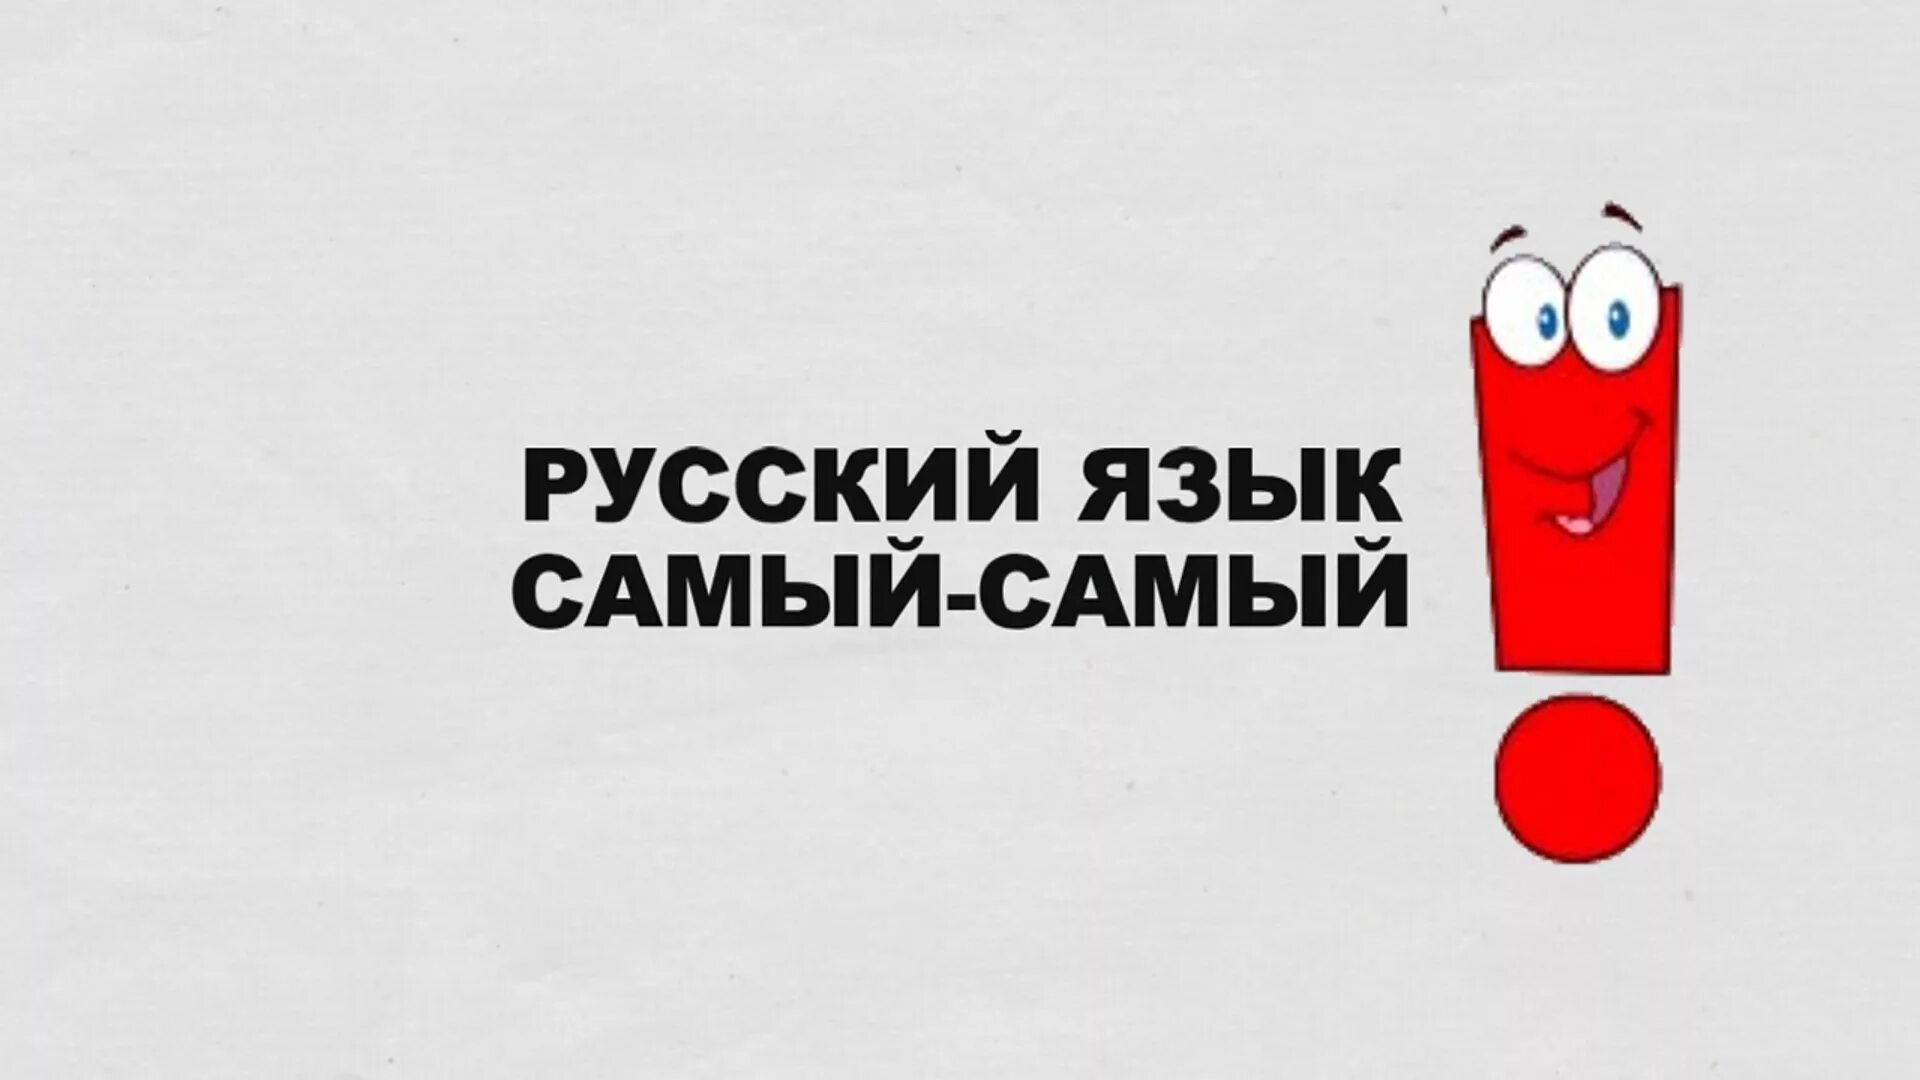 Русский язык. Социальная реклама русского языка. Русский язык лучший. Я русский.